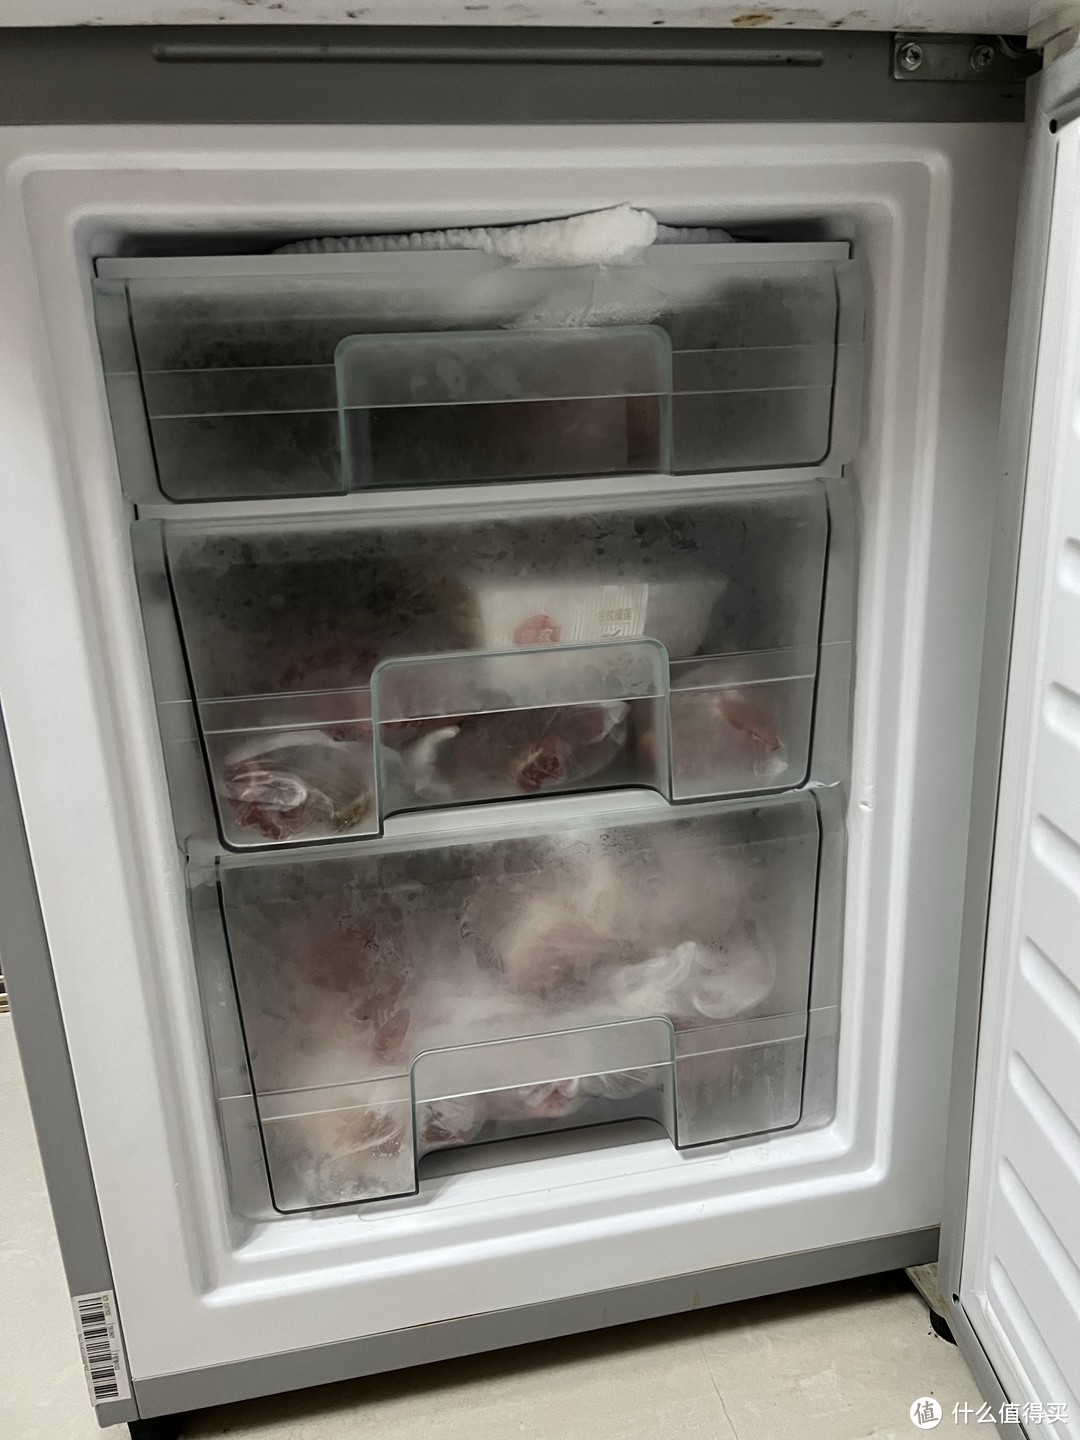 夏天一定要有一个专门放冷饮的冰箱